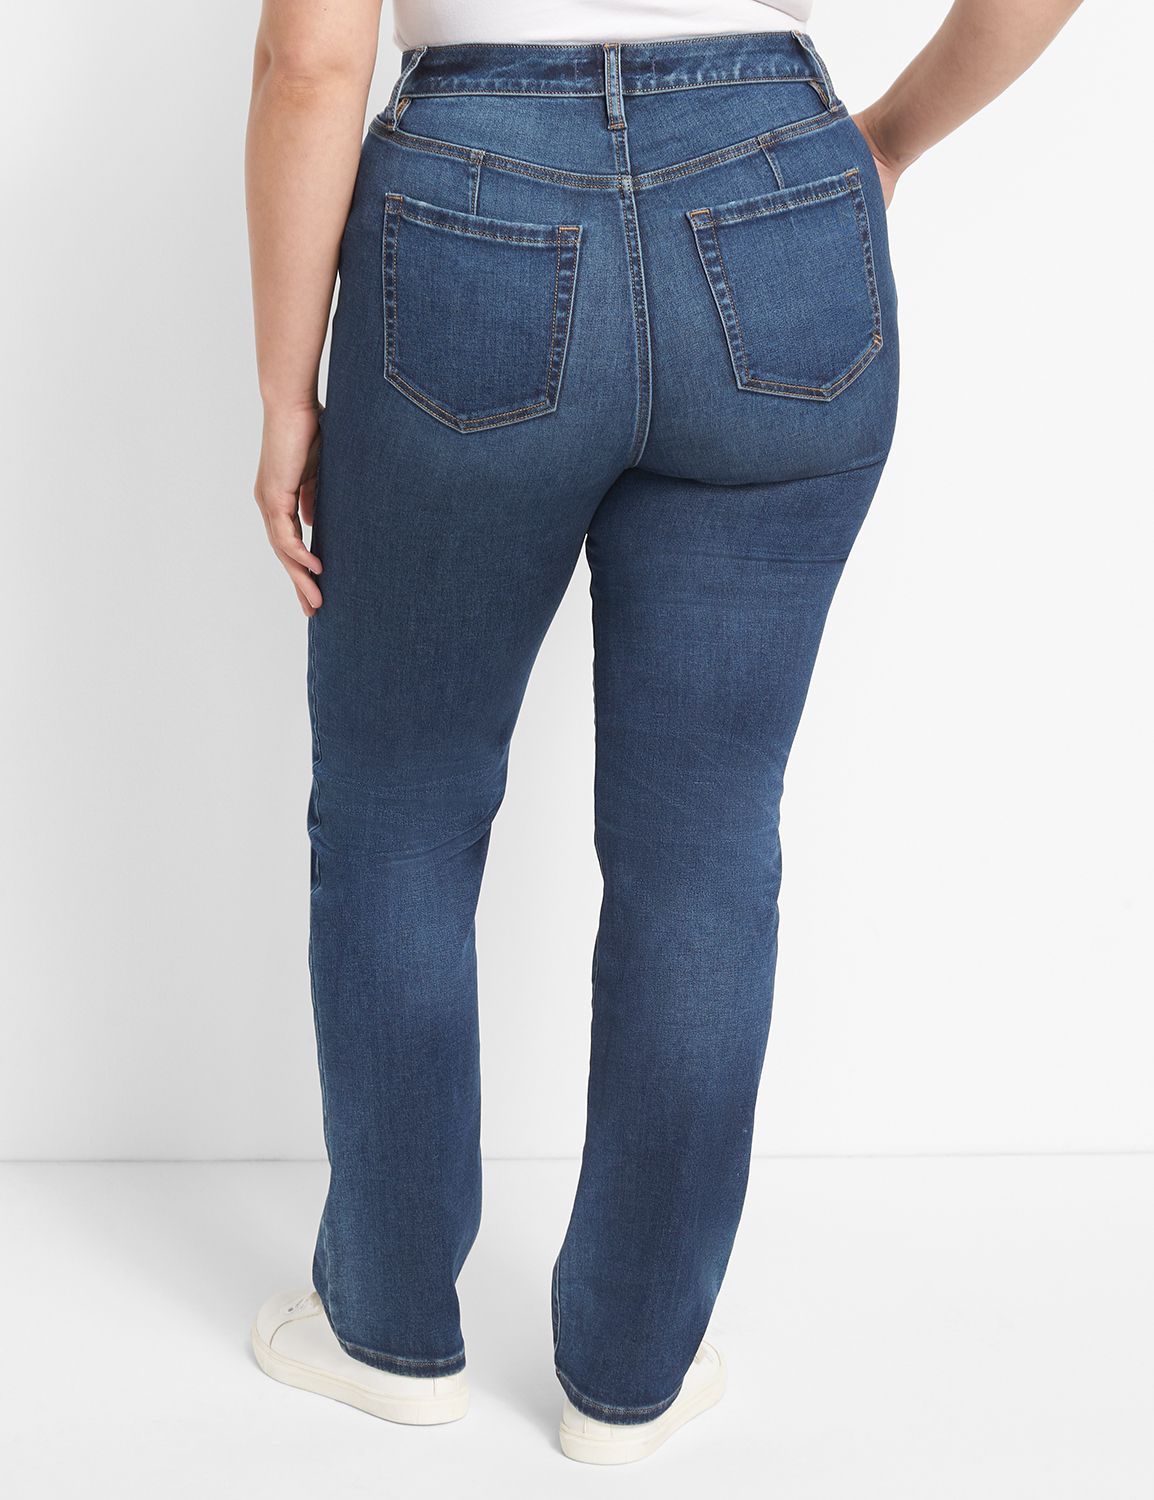 Fit Genius High-Rise Straight Jean - Medium Wash